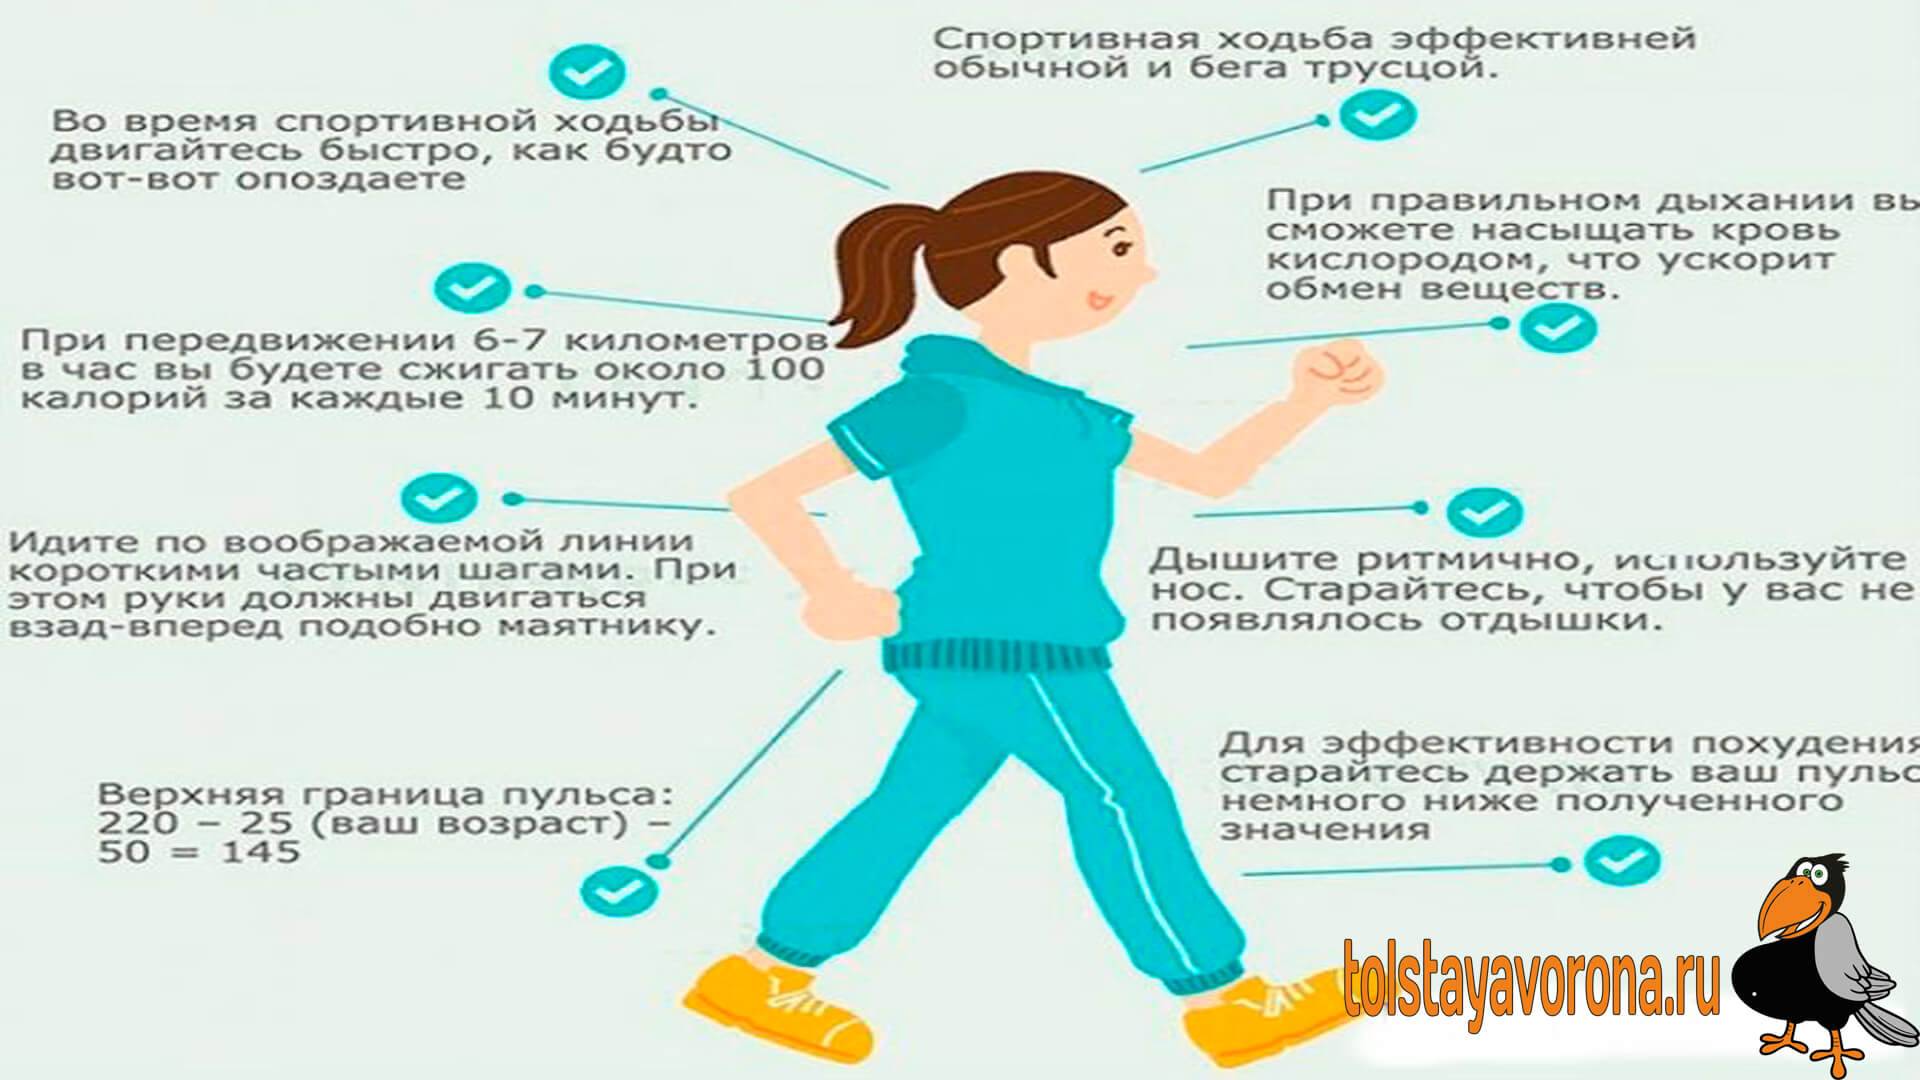 1 5 часа шага. Влияние ходьбы. Пешие прогулки полезны для здоровья. Ходьба полезна для здоровья. Влияние ходьбы на организм.